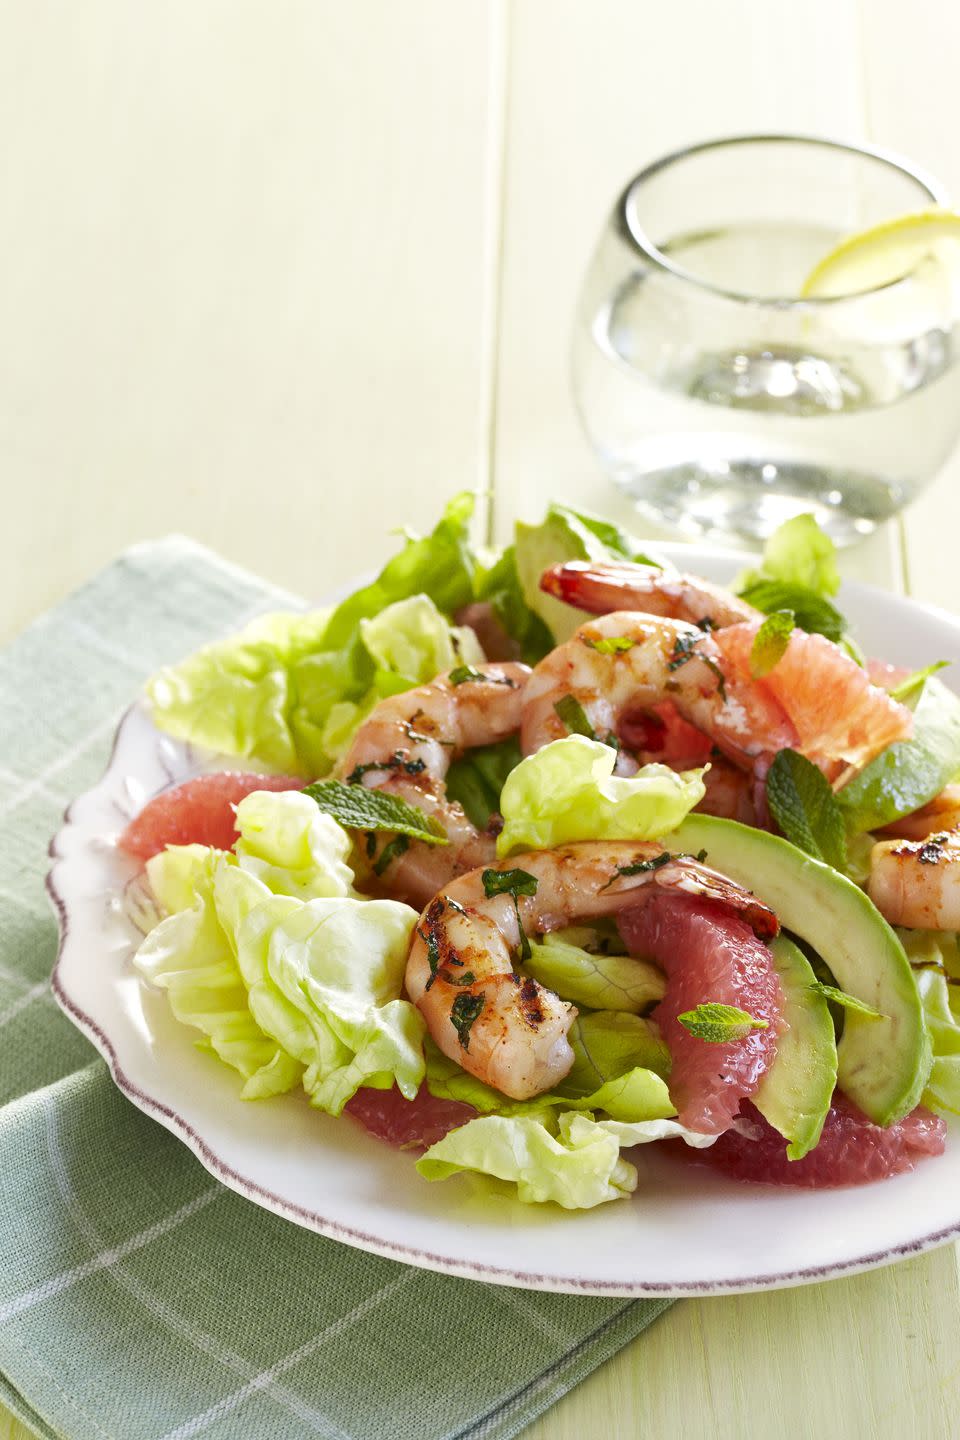 Lime-Rubbed Shrimp With Avocado-Grapefruit Salad